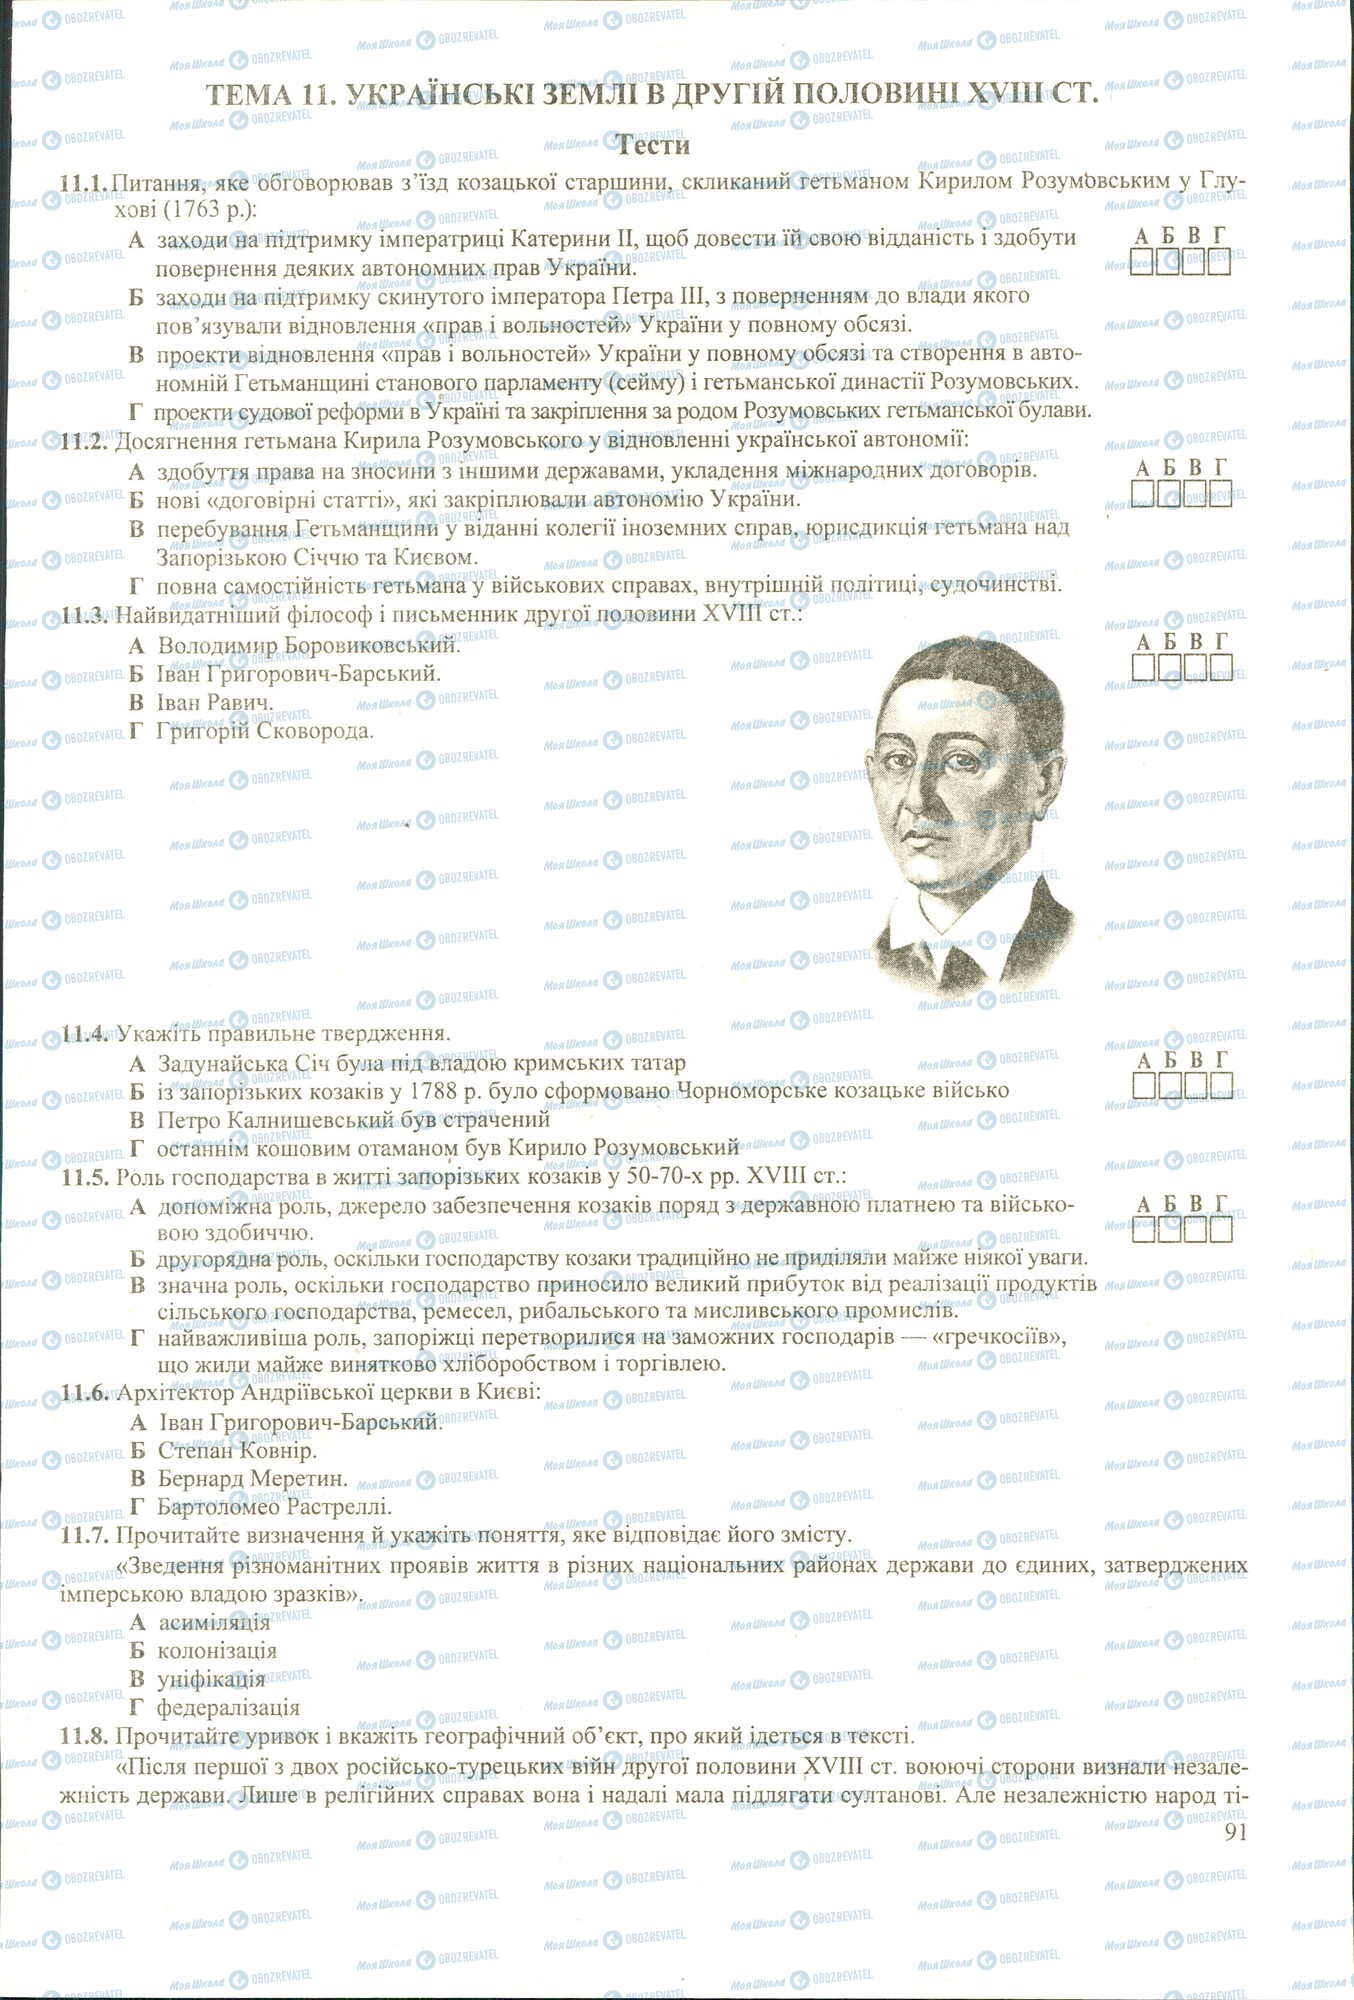 ЗНО История Украины 11 класс страница 1-8